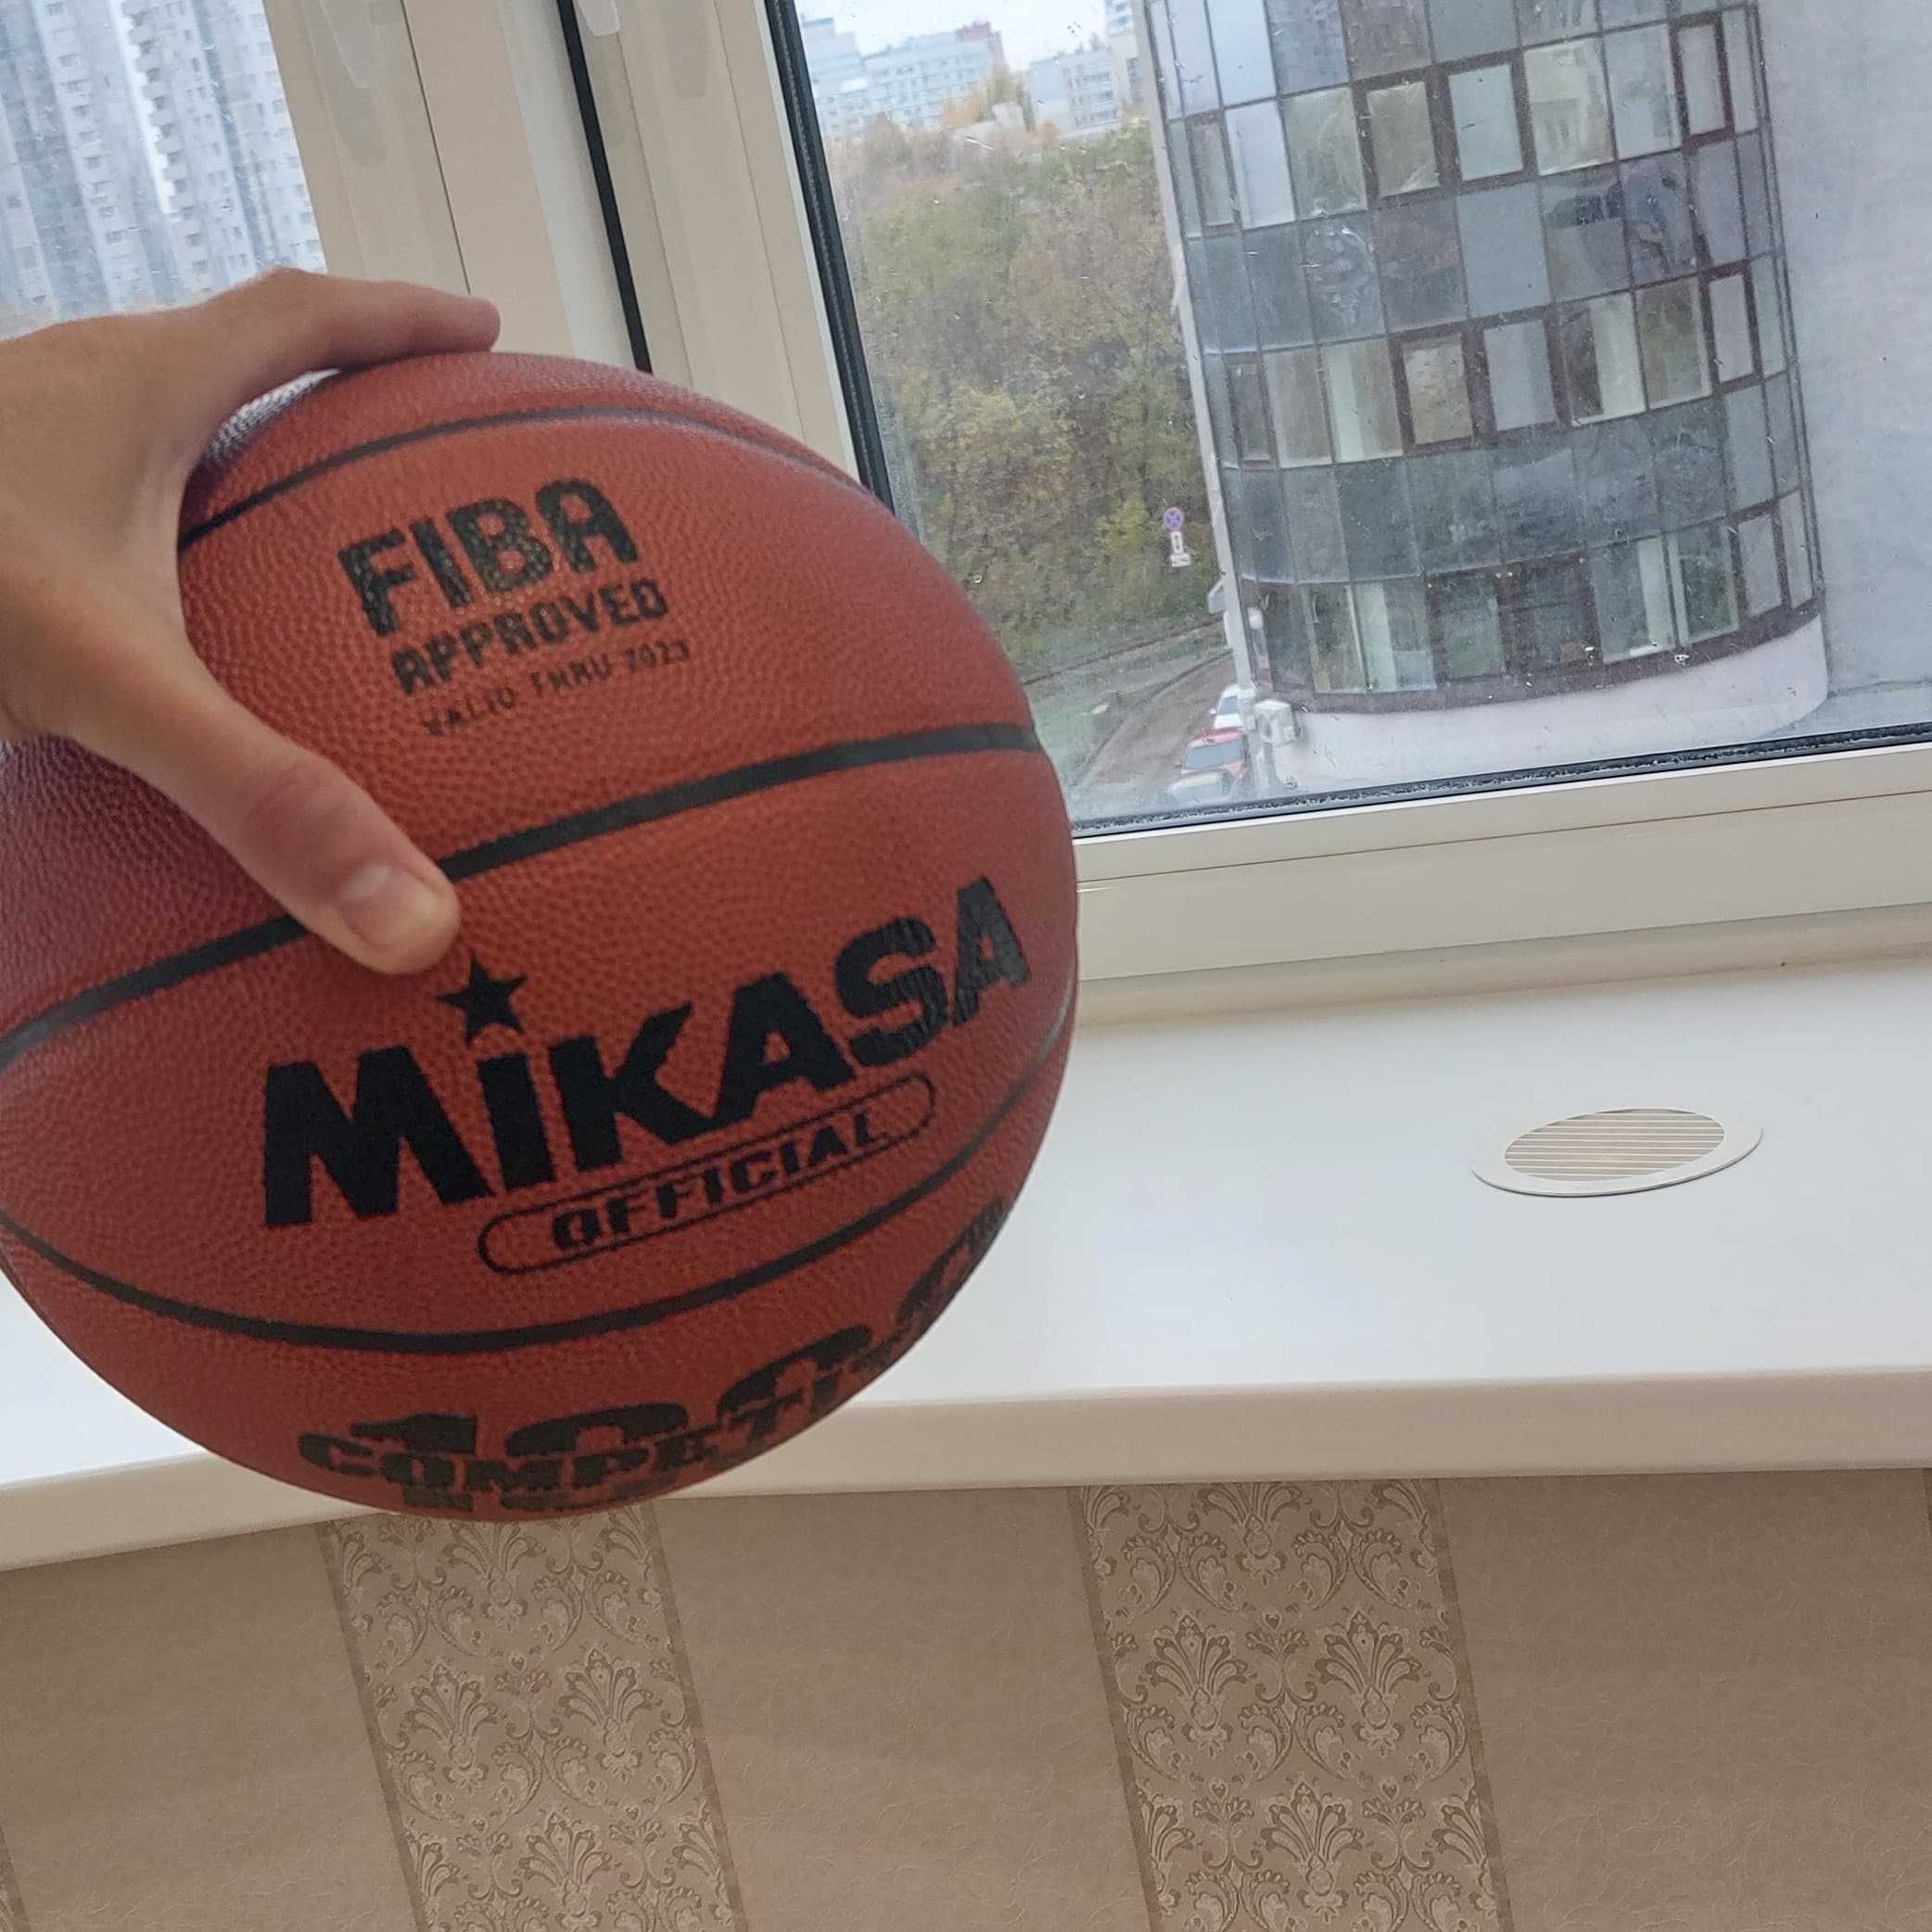 Продам волейбольные мячи Mikasa оригинал